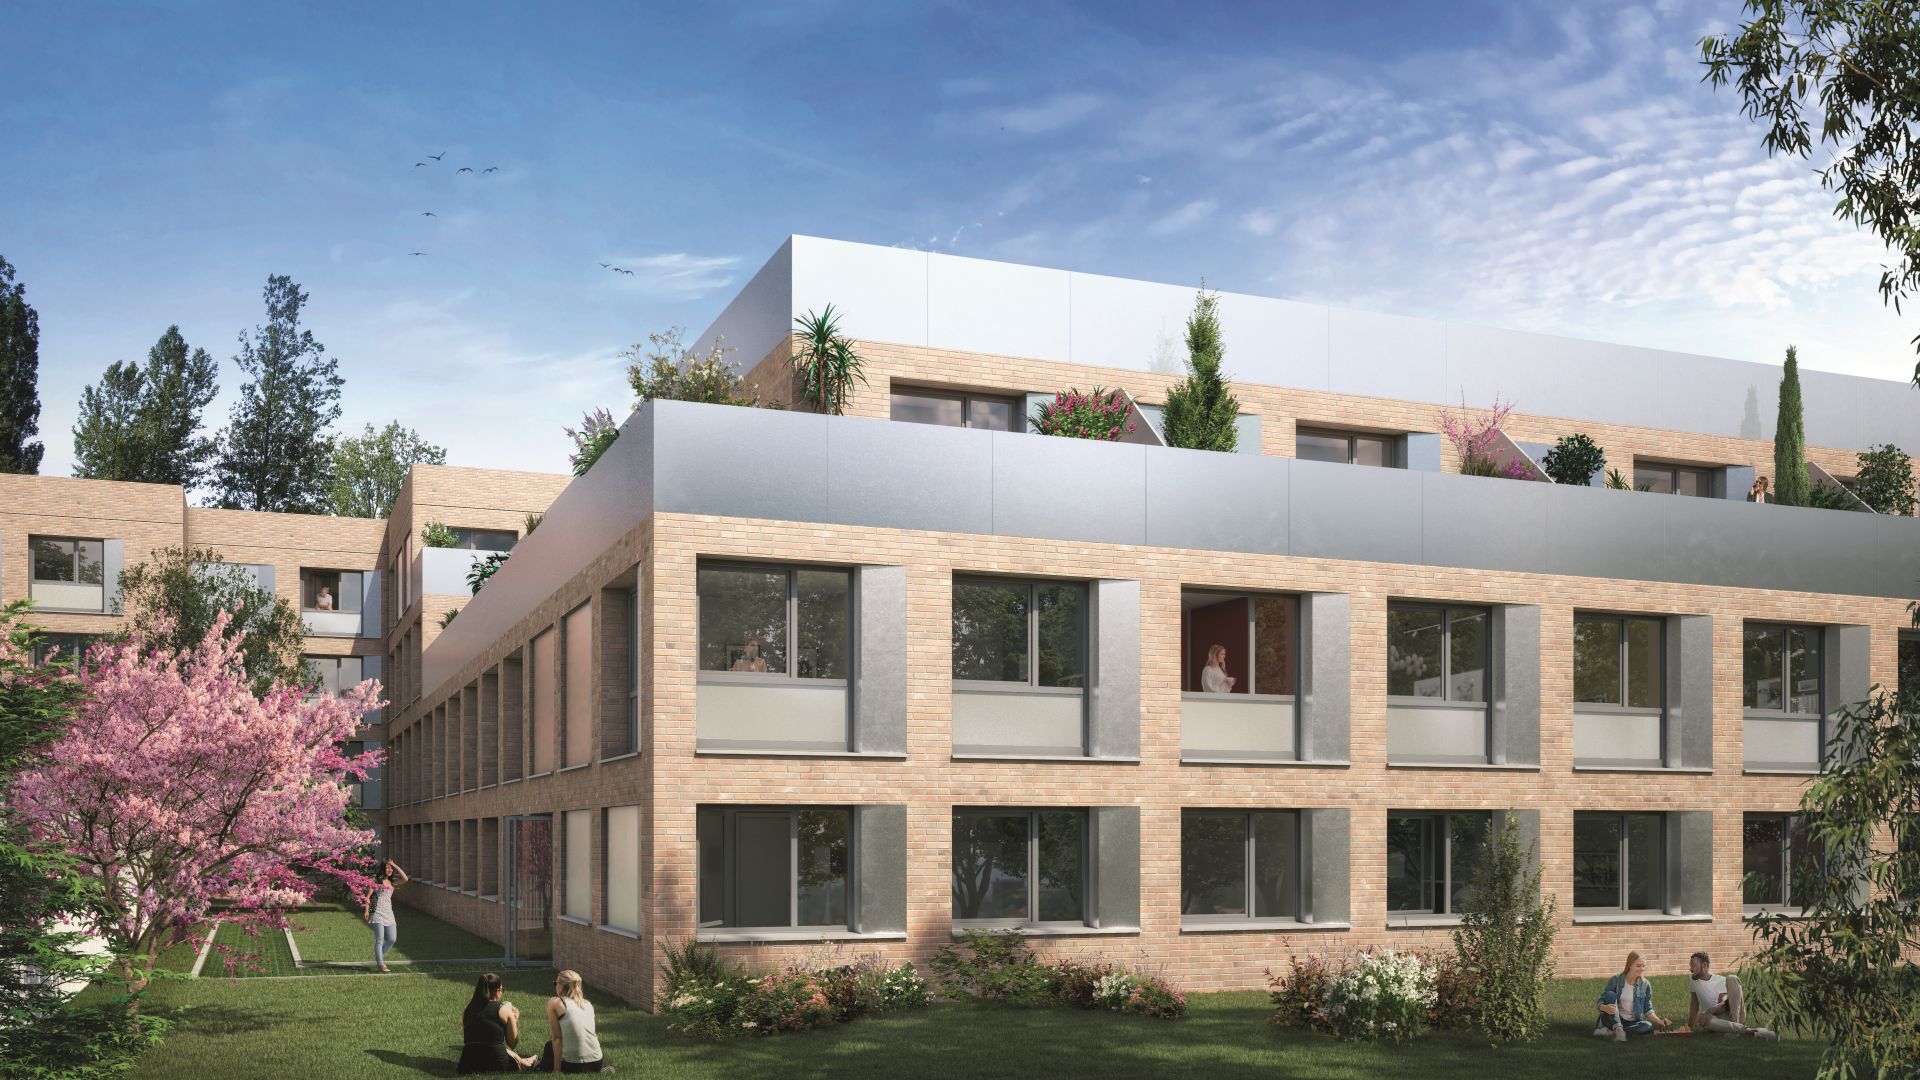 Greencity immobilier - achat appartements neufs du T1 au T5 - Résidence Etudiante - Aristote - 31400 Toulouse Rangueil